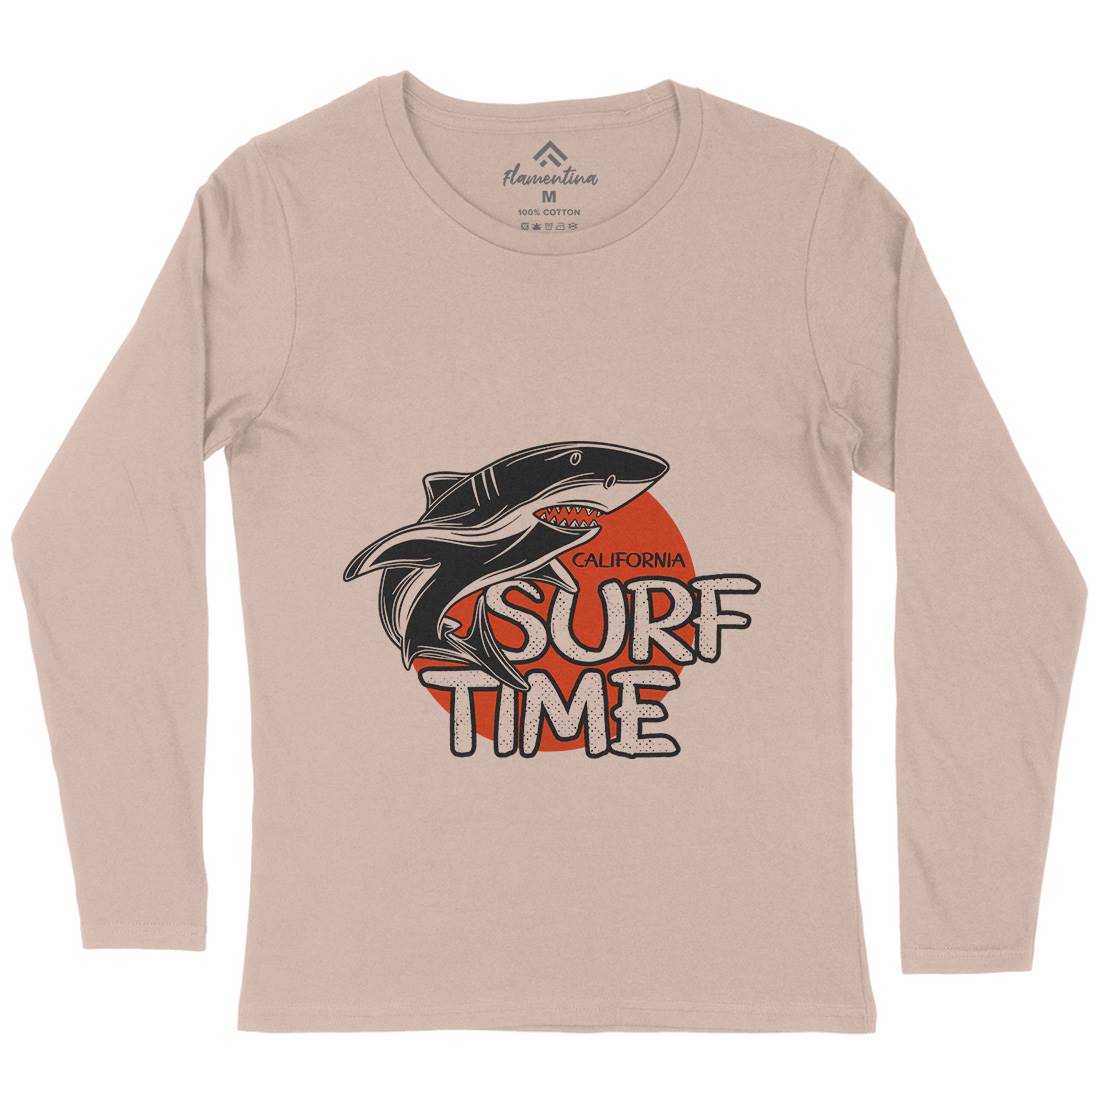 Shark Time Womens Long Sleeve T-Shirt Navy D969